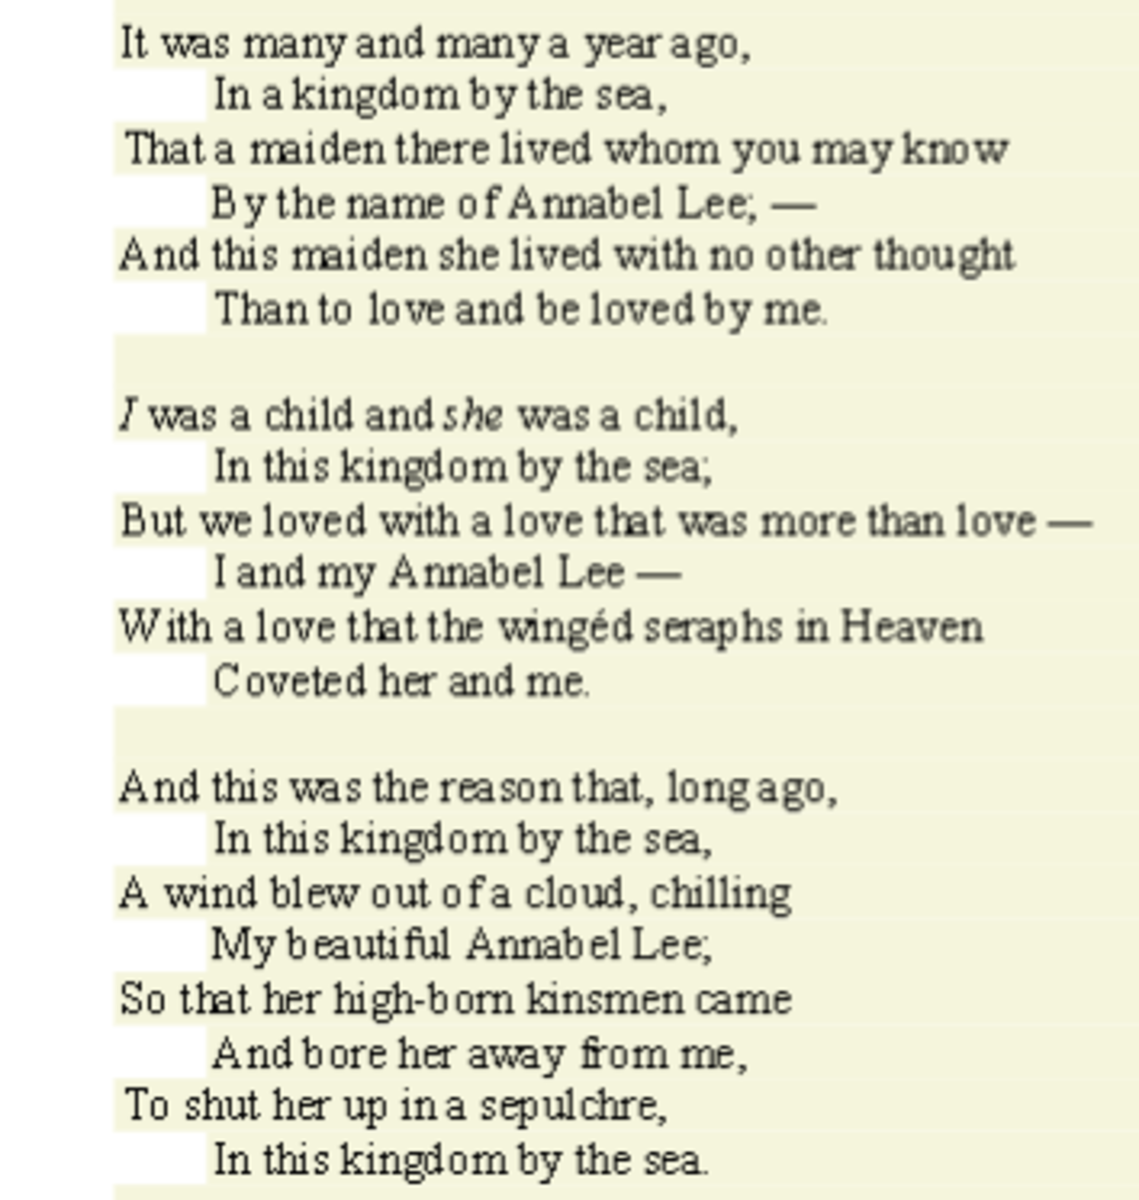 analysis-of-poem-annabel-lee-by-edgar-allan-poe